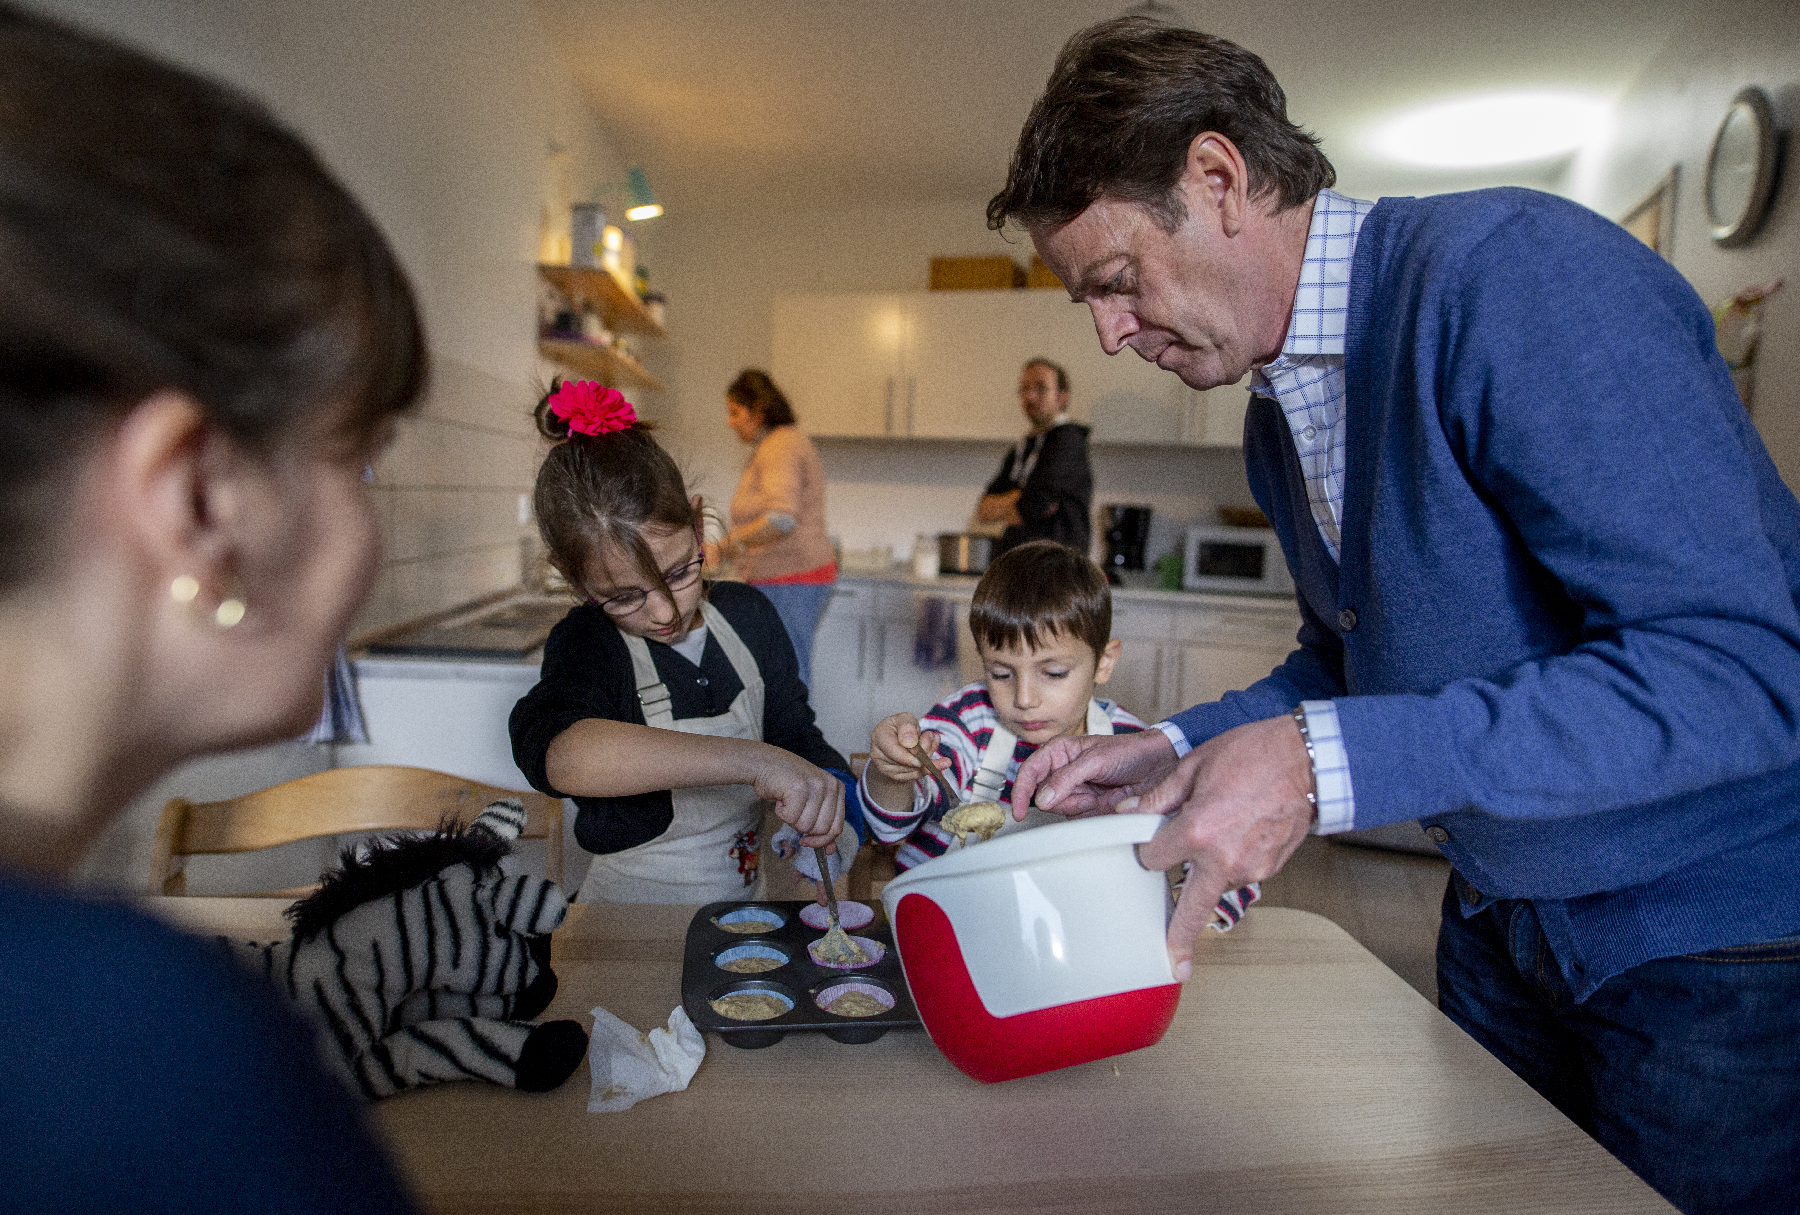 Foto: Rudi Cerne backt zusammen mit den Kindern der Familie Tavonius Muffins